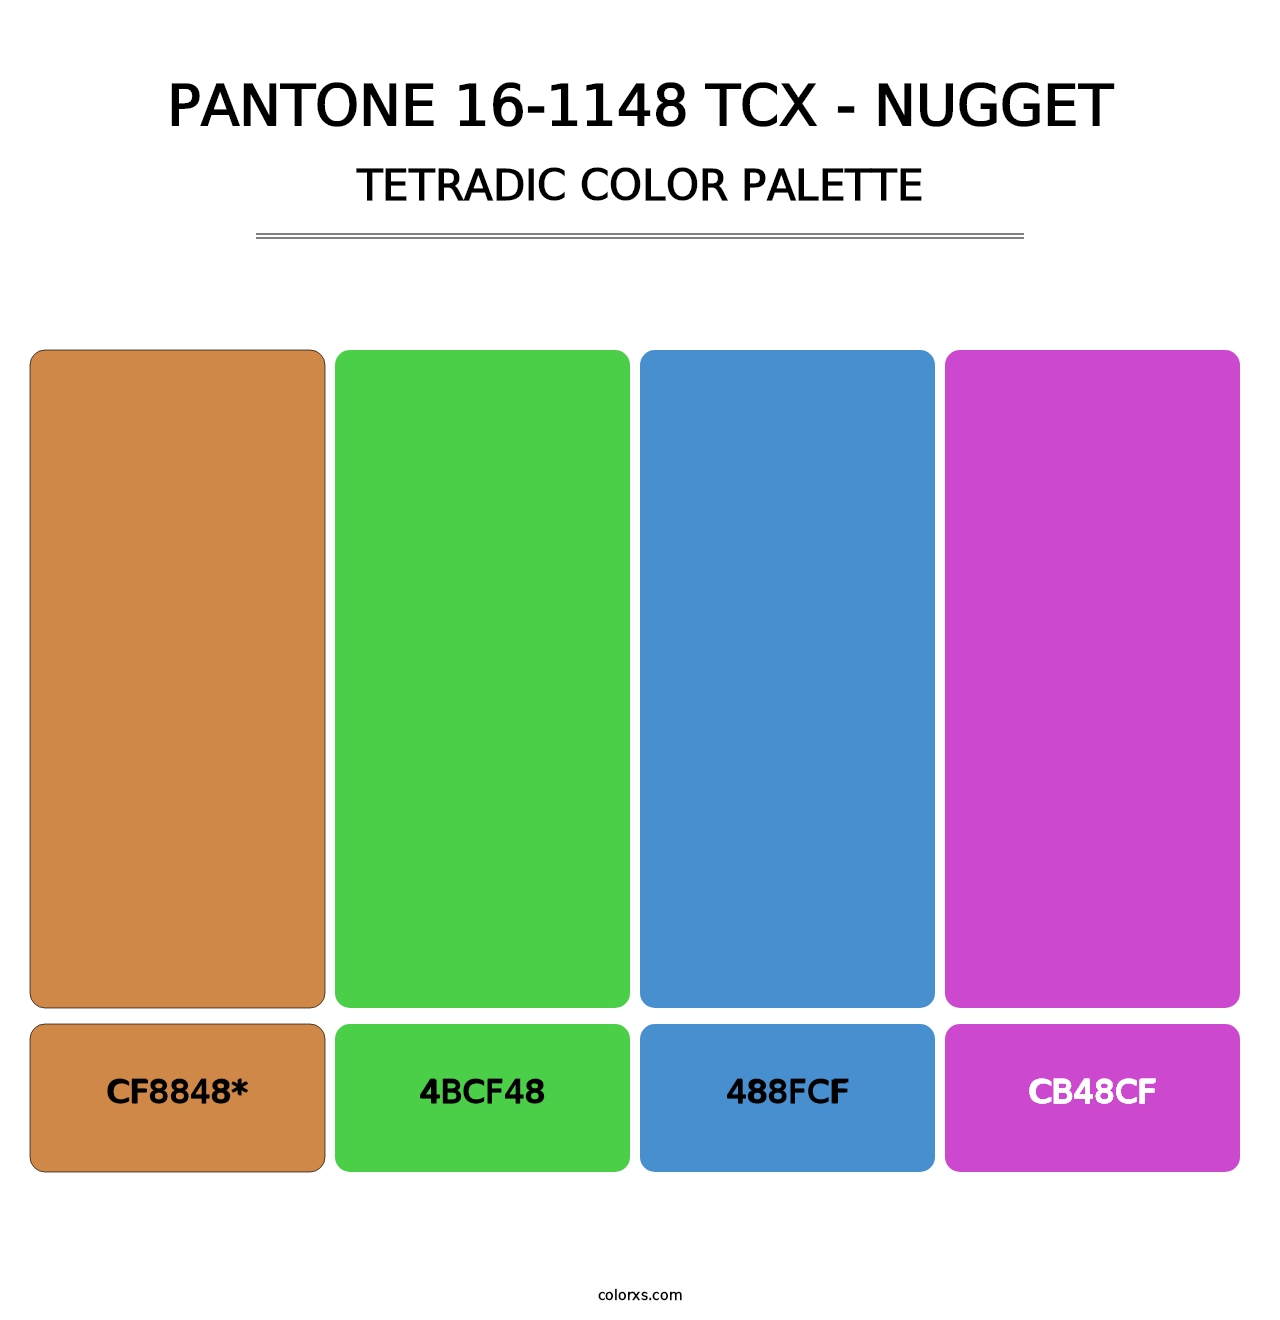 PANTONE 16-1148 TCX - Nugget - Tetradic Color Palette